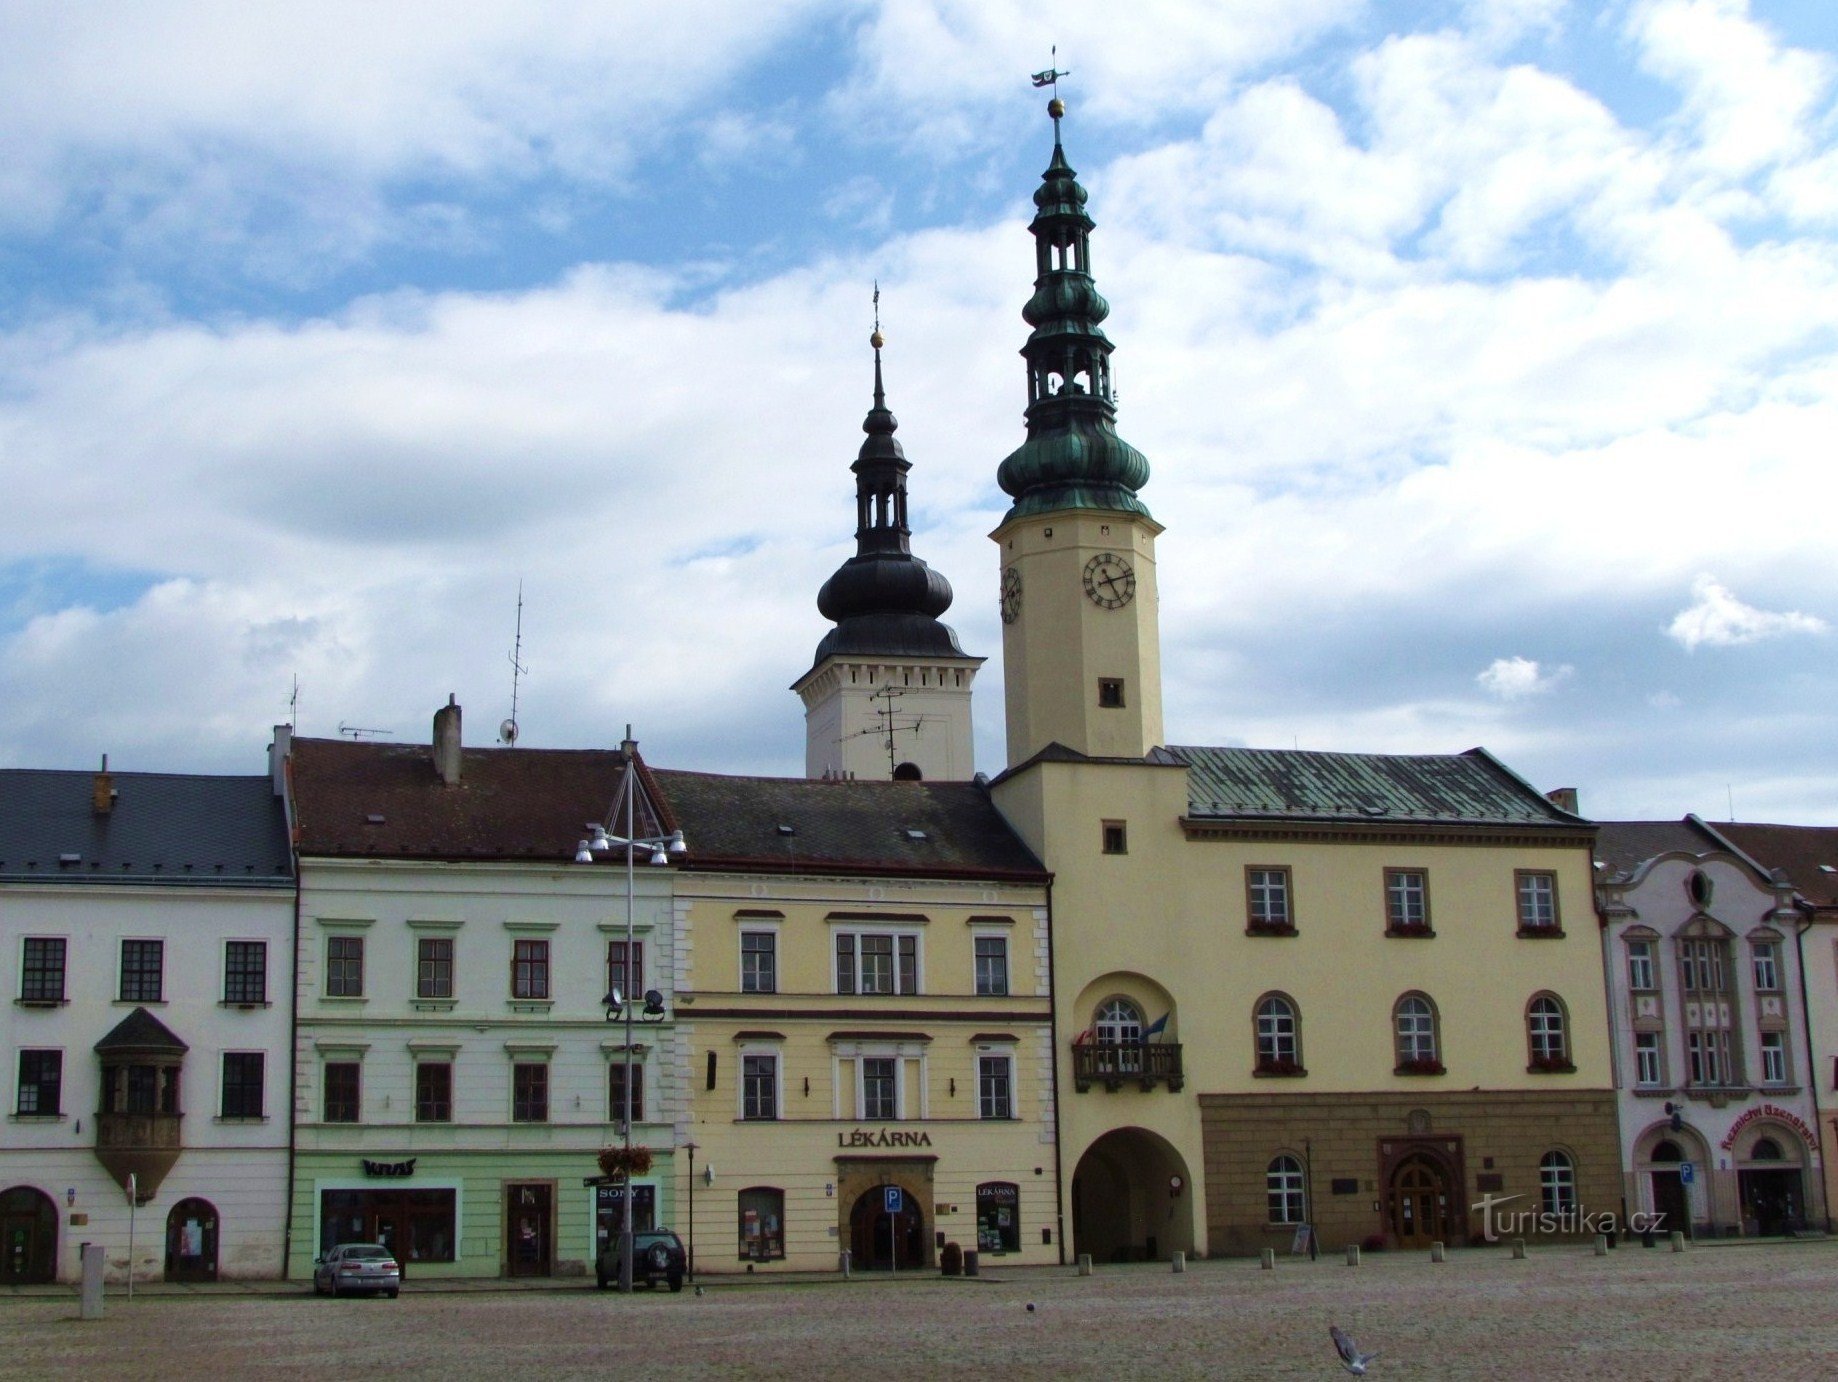 Town hall with a tower in Moravská Třebová